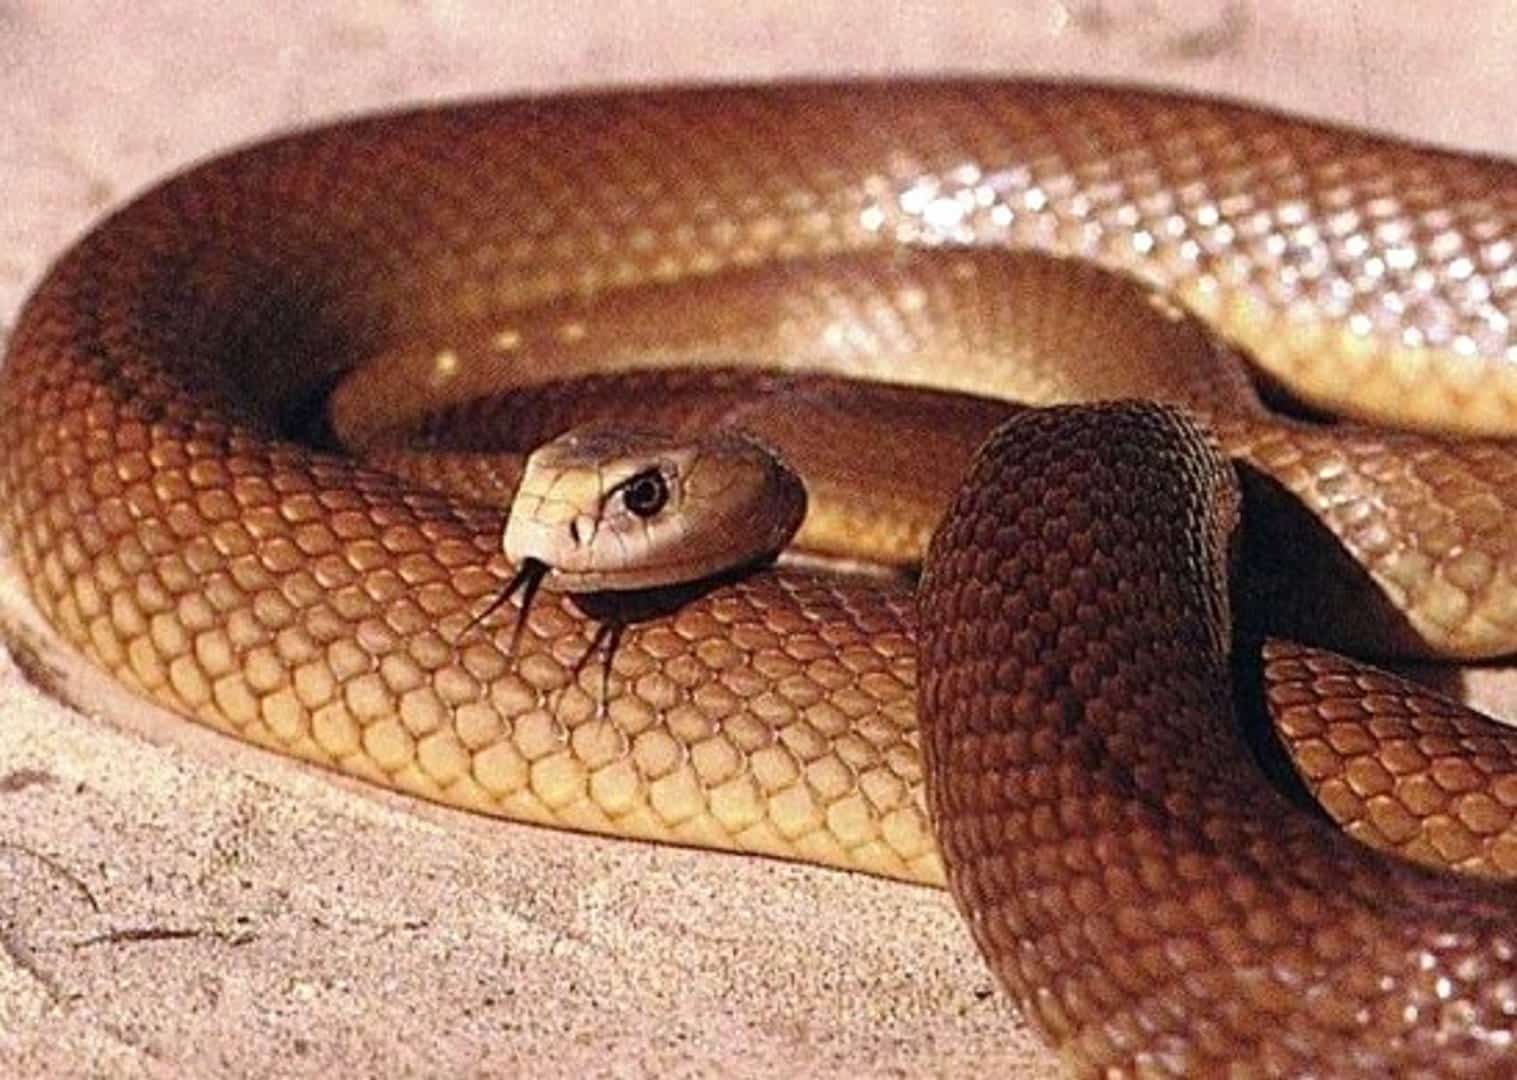 Afinal, qual é a cobra mais venenosa do mundo? E do Brasil?